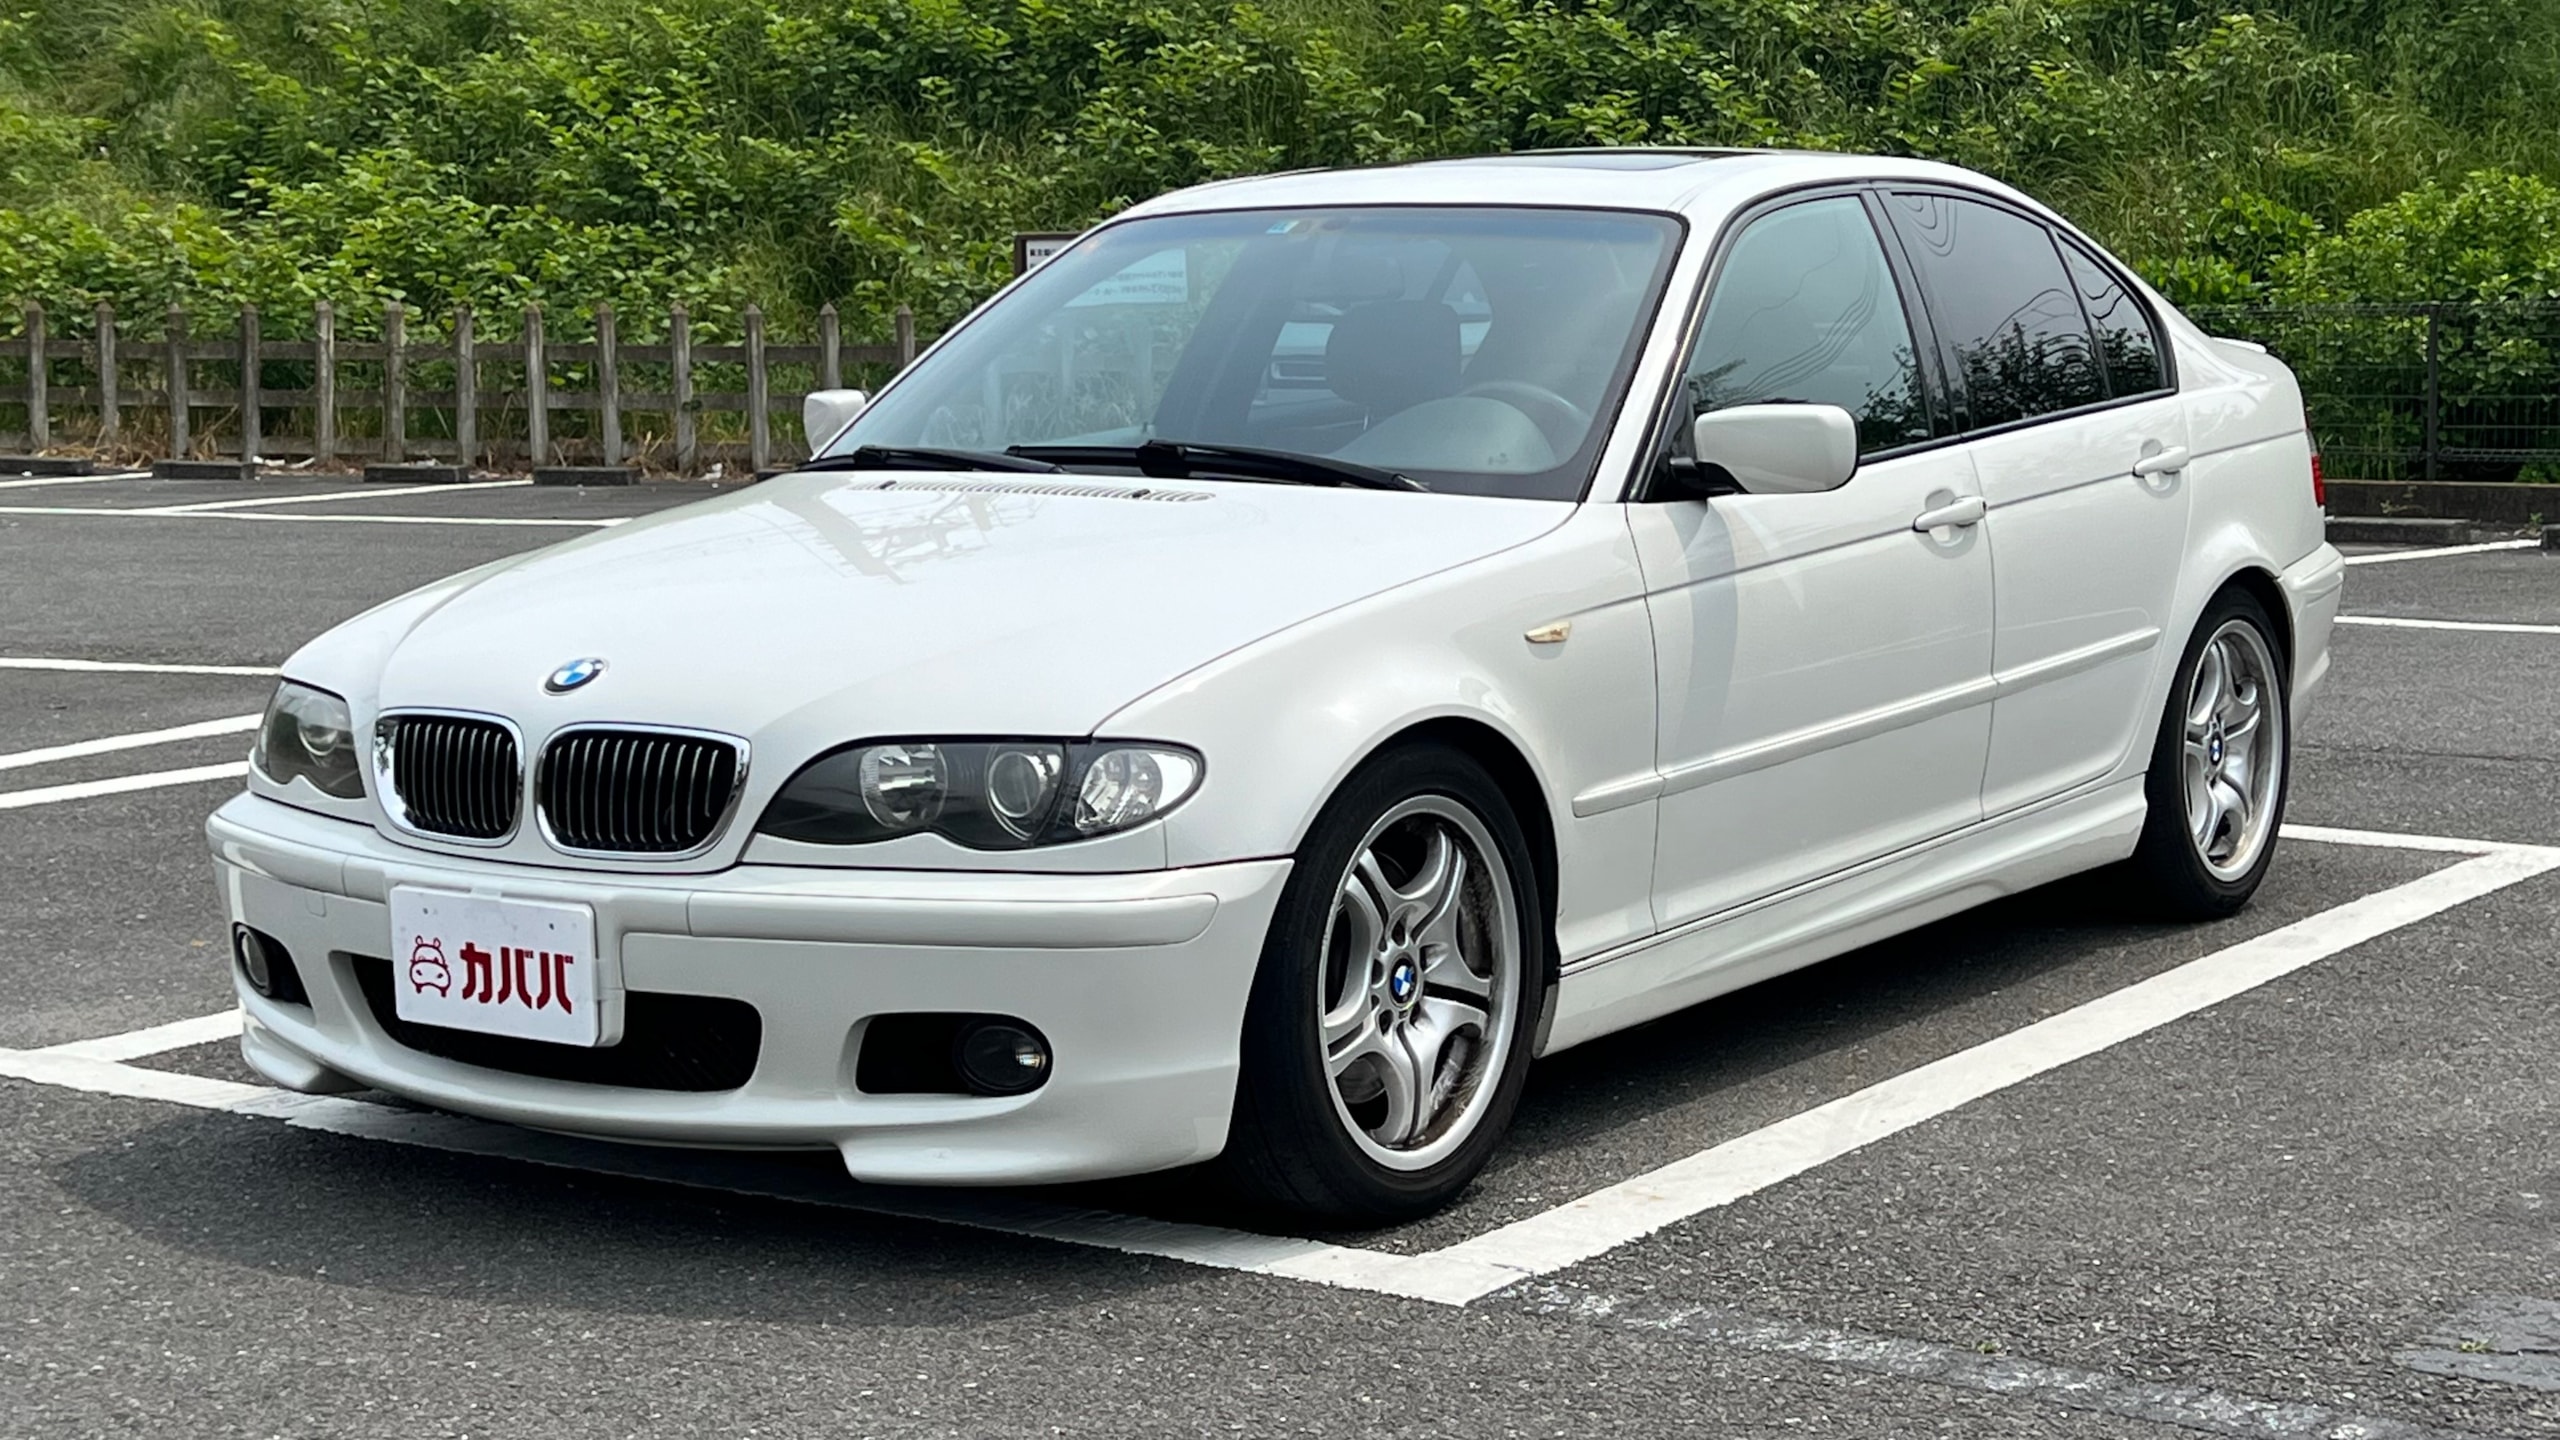 3シリーズ 330i Mスポーツ(BMW)2004年式 155万円の中古車 - 自動車フリマ(車の個人売買)。カババ